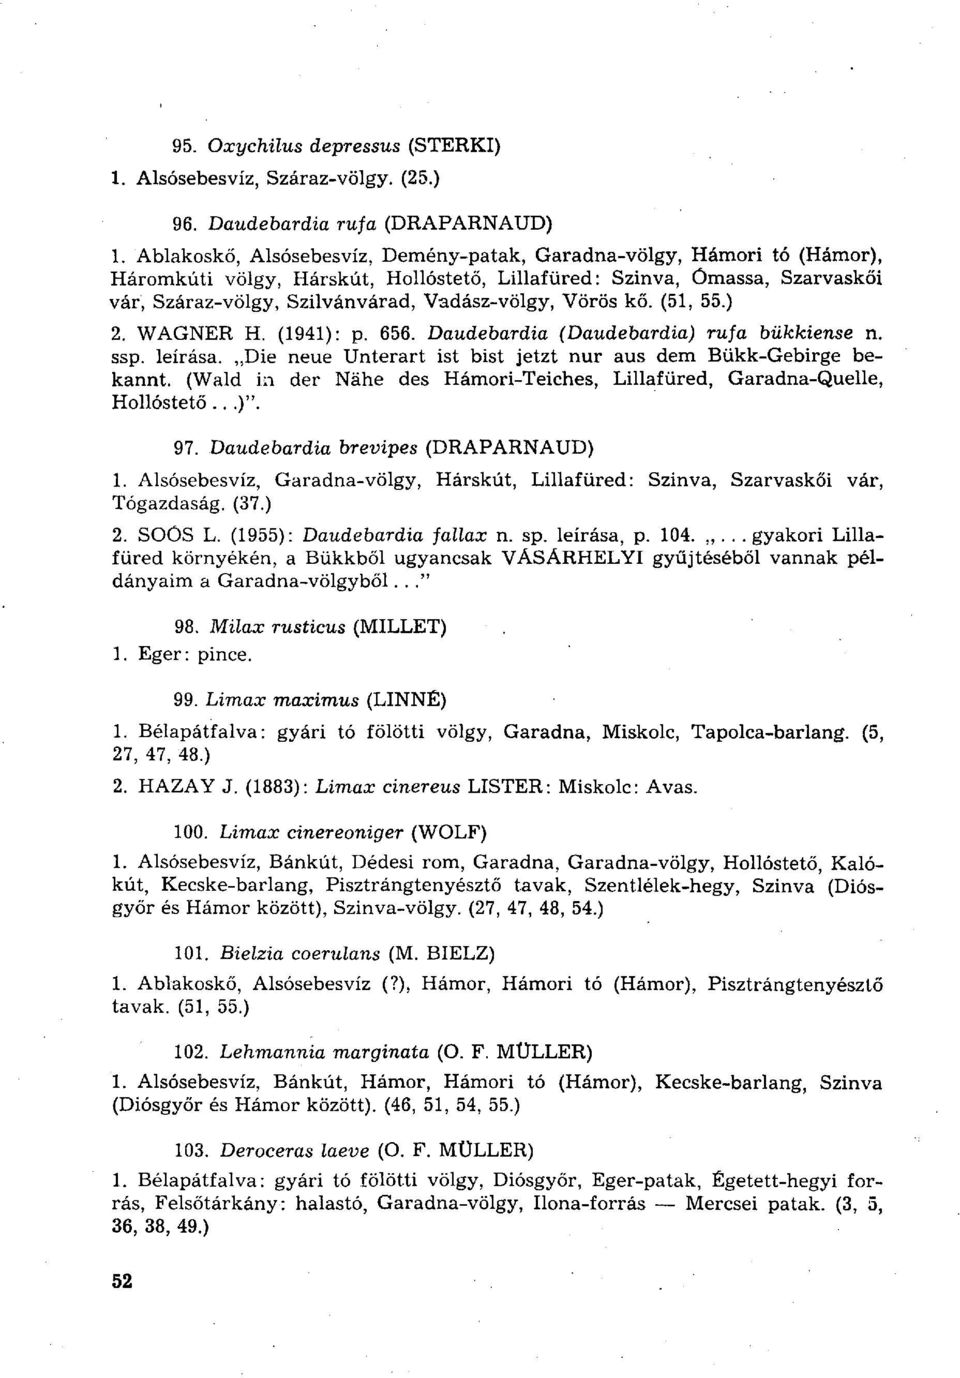 Vörös kő. (51, 55.) 2. WAGNER H. (1941): p. 656. Daudebardia (Daudebardia) rufa bükkiense n. ssp. leírása. Die neue Unterart ist bist jetzt nur aus dem Bükk-Gebirge bekannt.